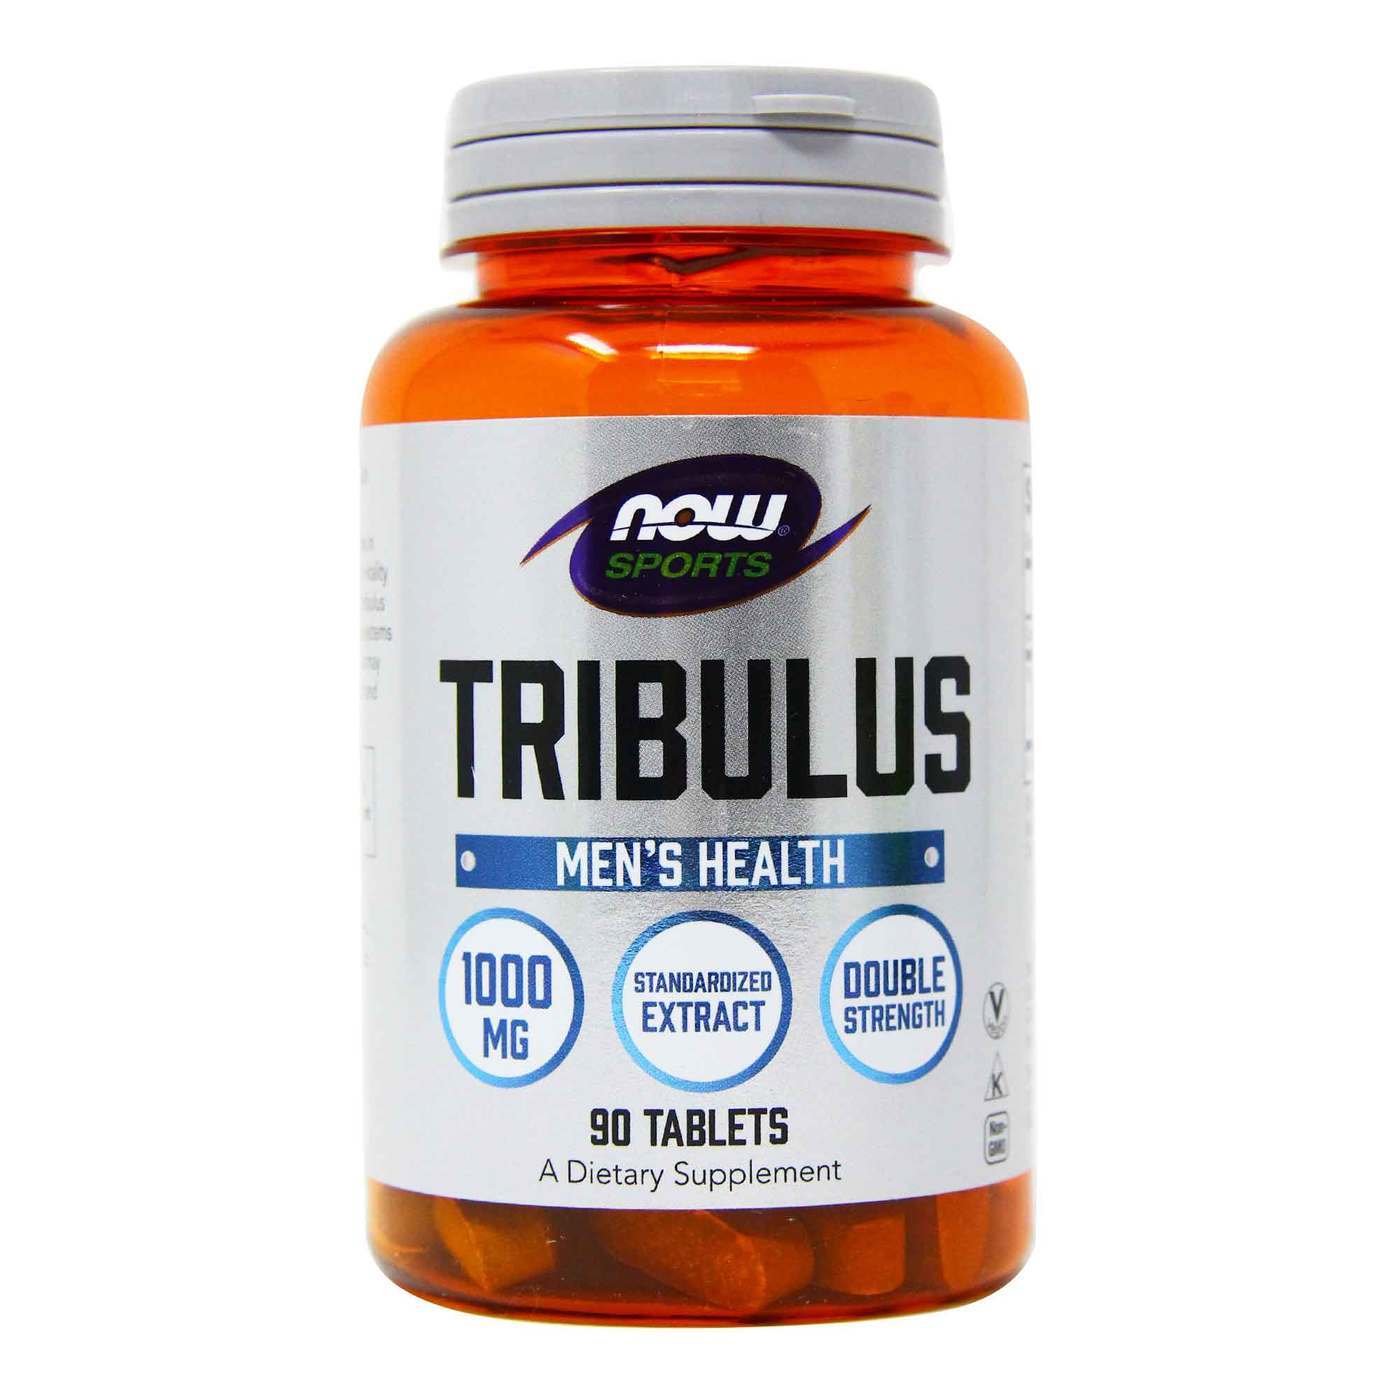 Стимулятор тестостерона NOW Sports Tribulus 1000 mg, 90 таблеток,  мл, Now. Трибулус. Поддержание здоровья Повышение либидо Повышение тестостерона Aнаболические свойства 